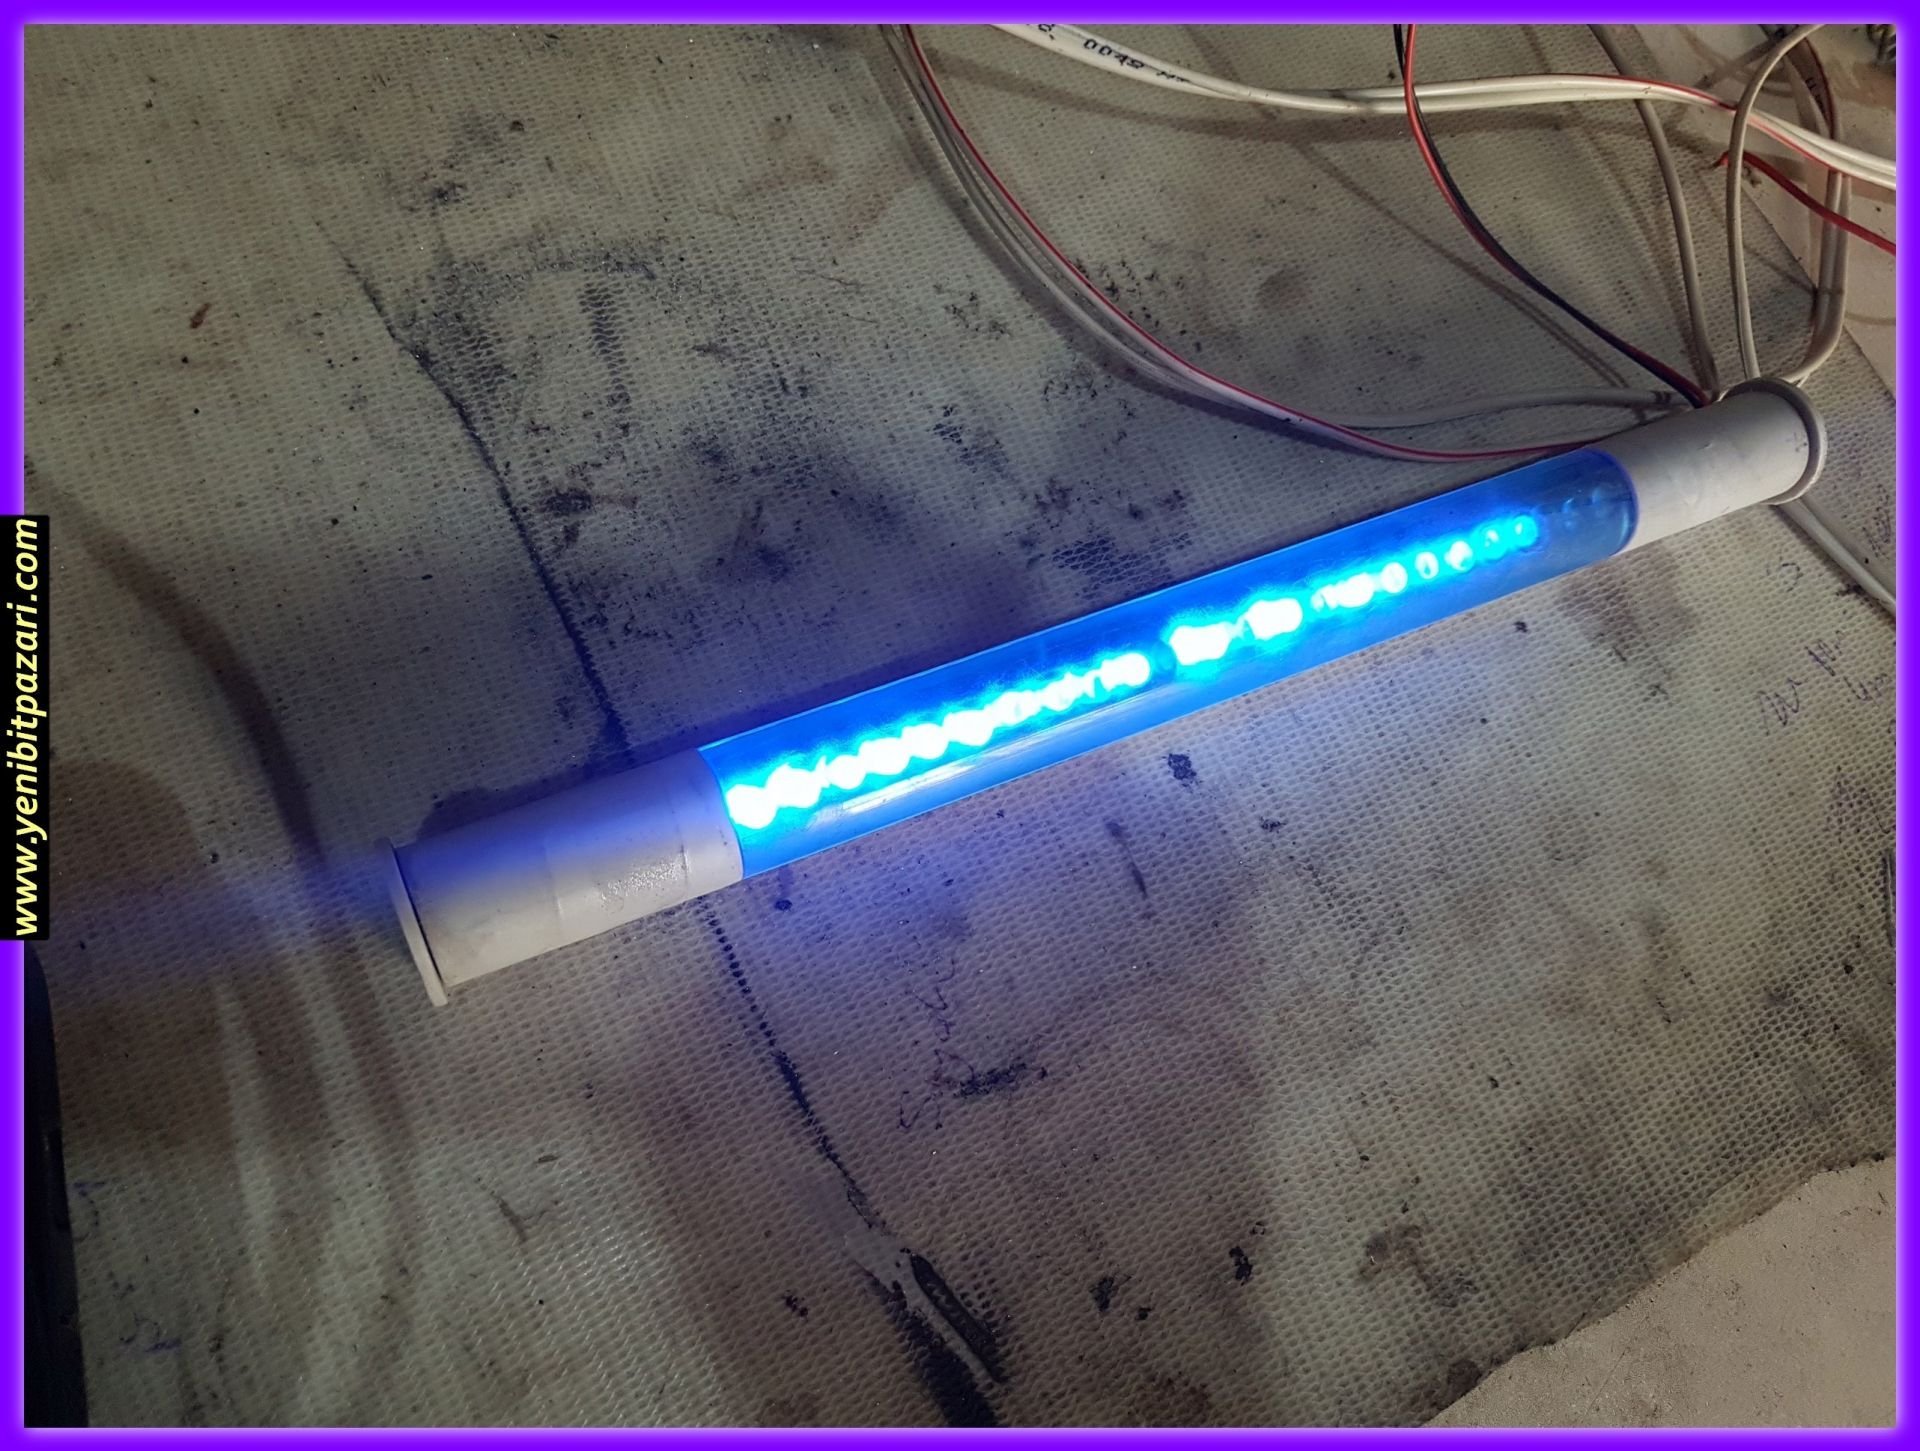 2,el 12v 12 volt mavi boru led pc kasasından çıktı 26cm uzunluk çap 2,5cm sorunsuz çalışıyor